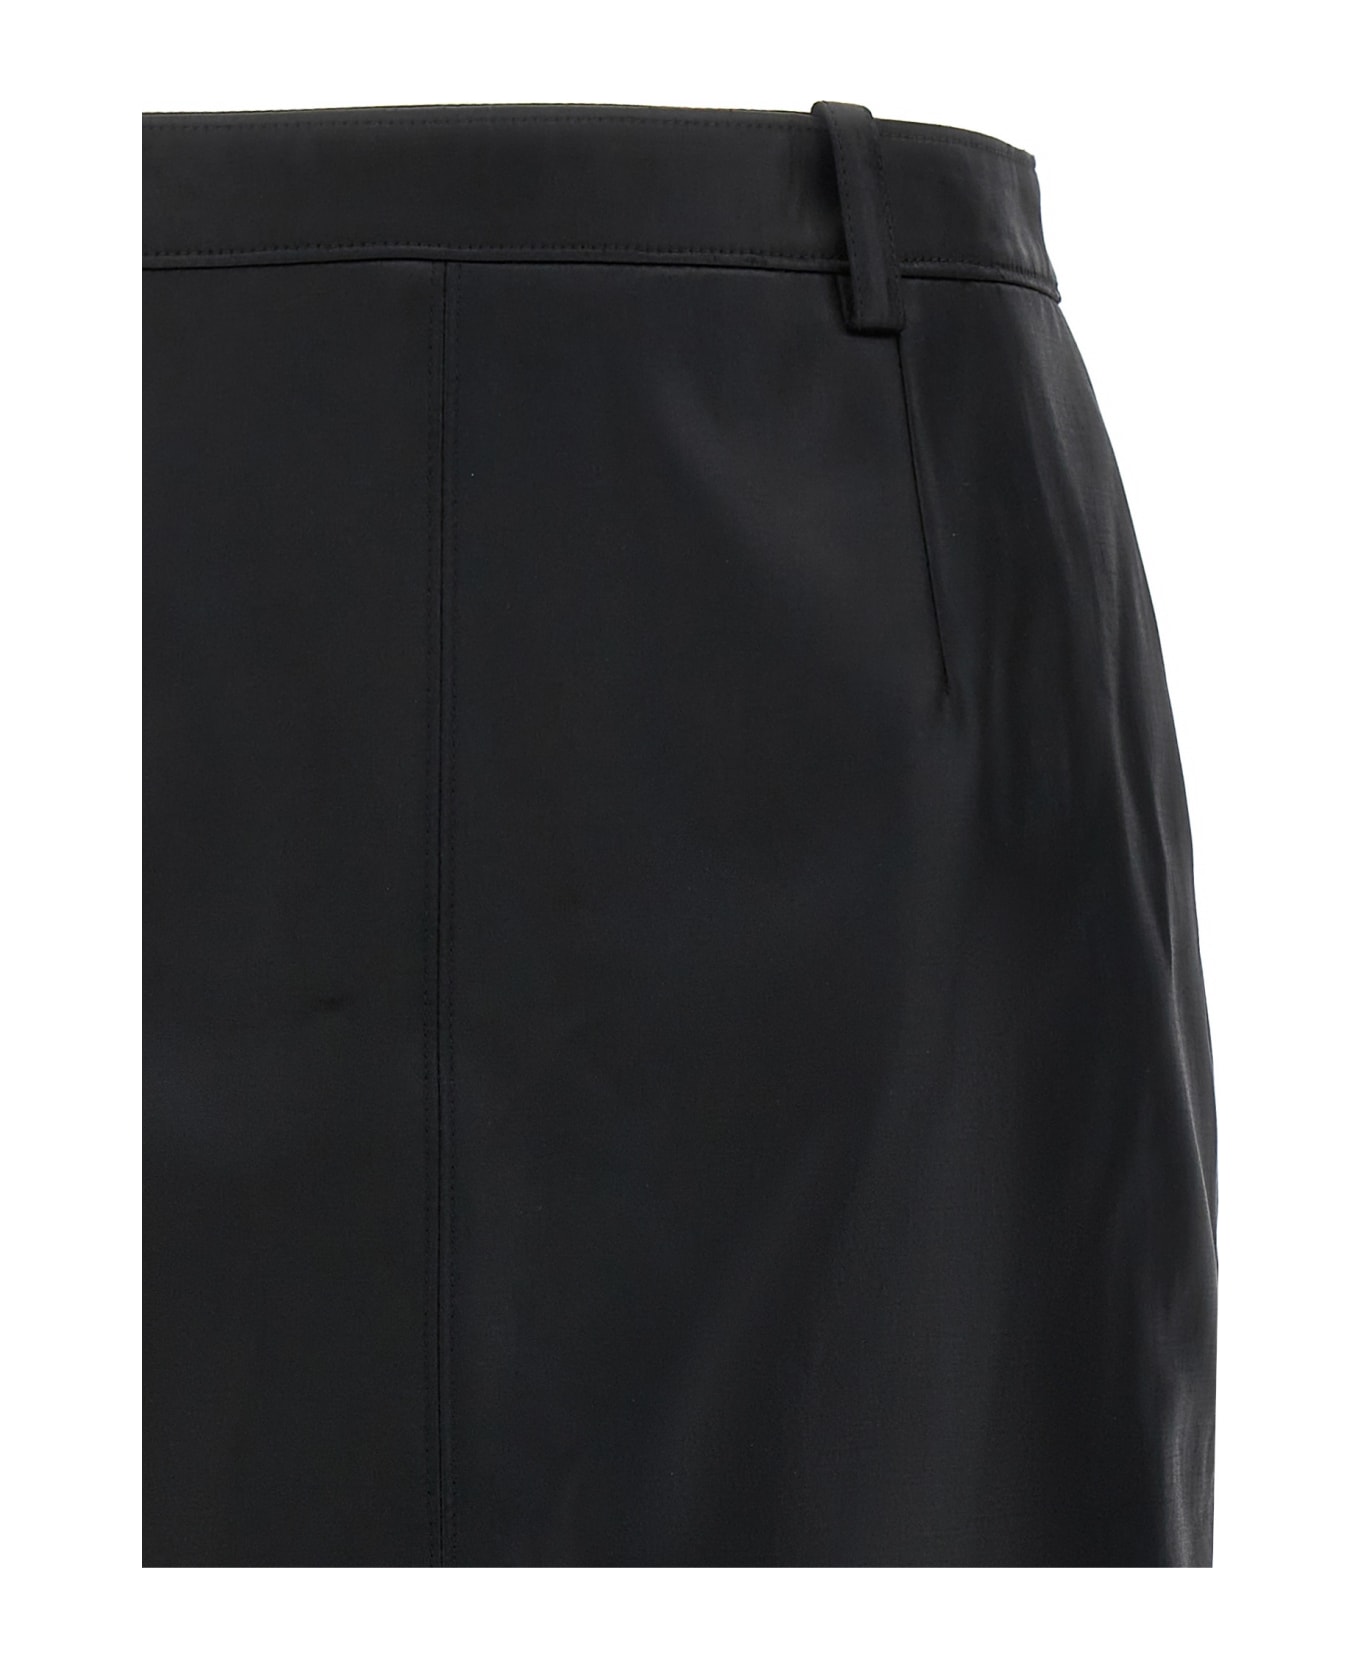 Saint Laurent Gabardine Skirt - Black